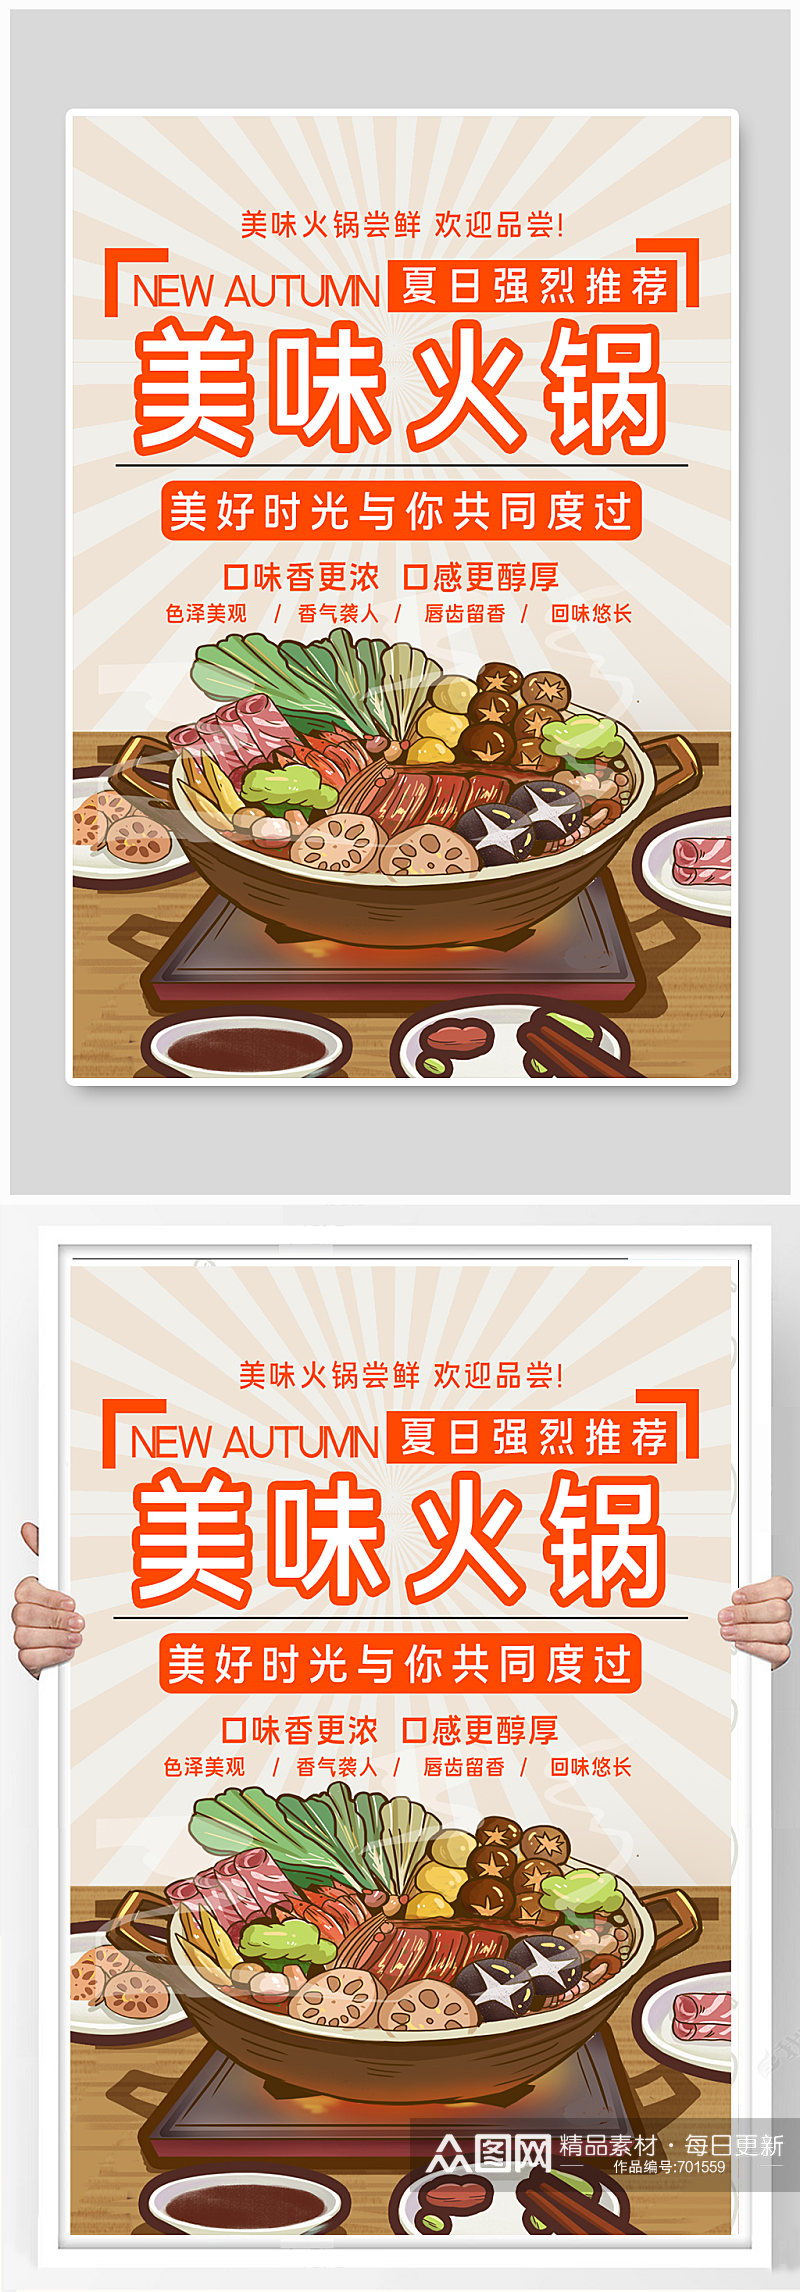 美味火锅美食宣传海报素材